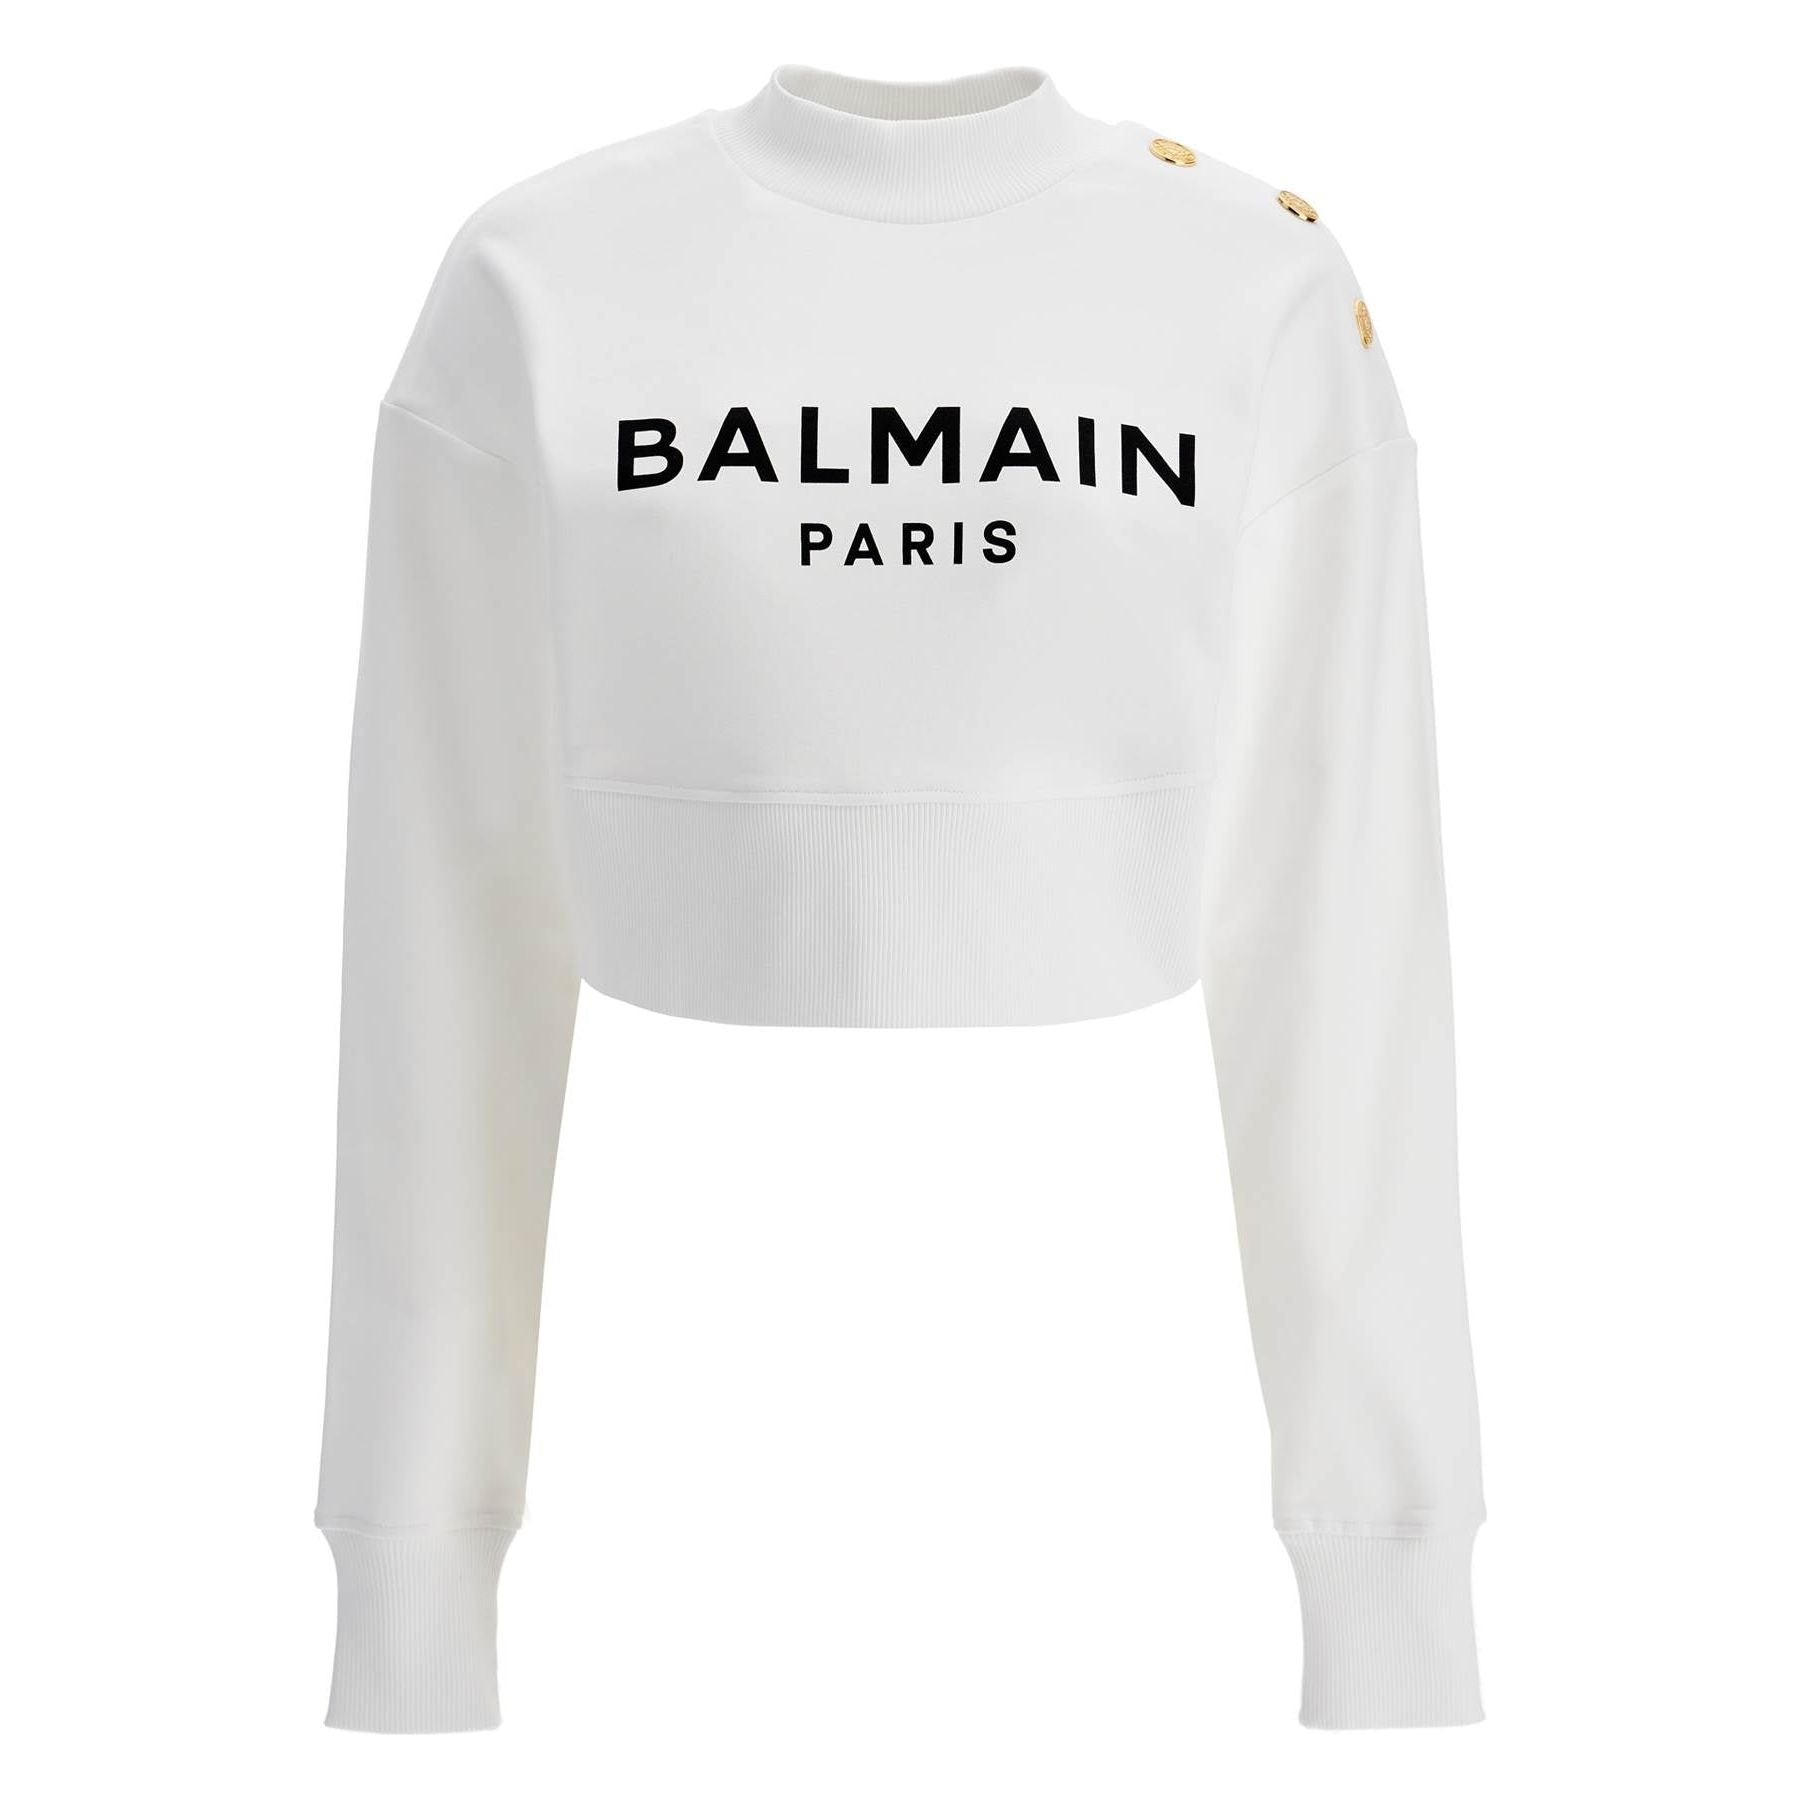 Organic Cotton Balmain Paris Cropped Sweatshirt